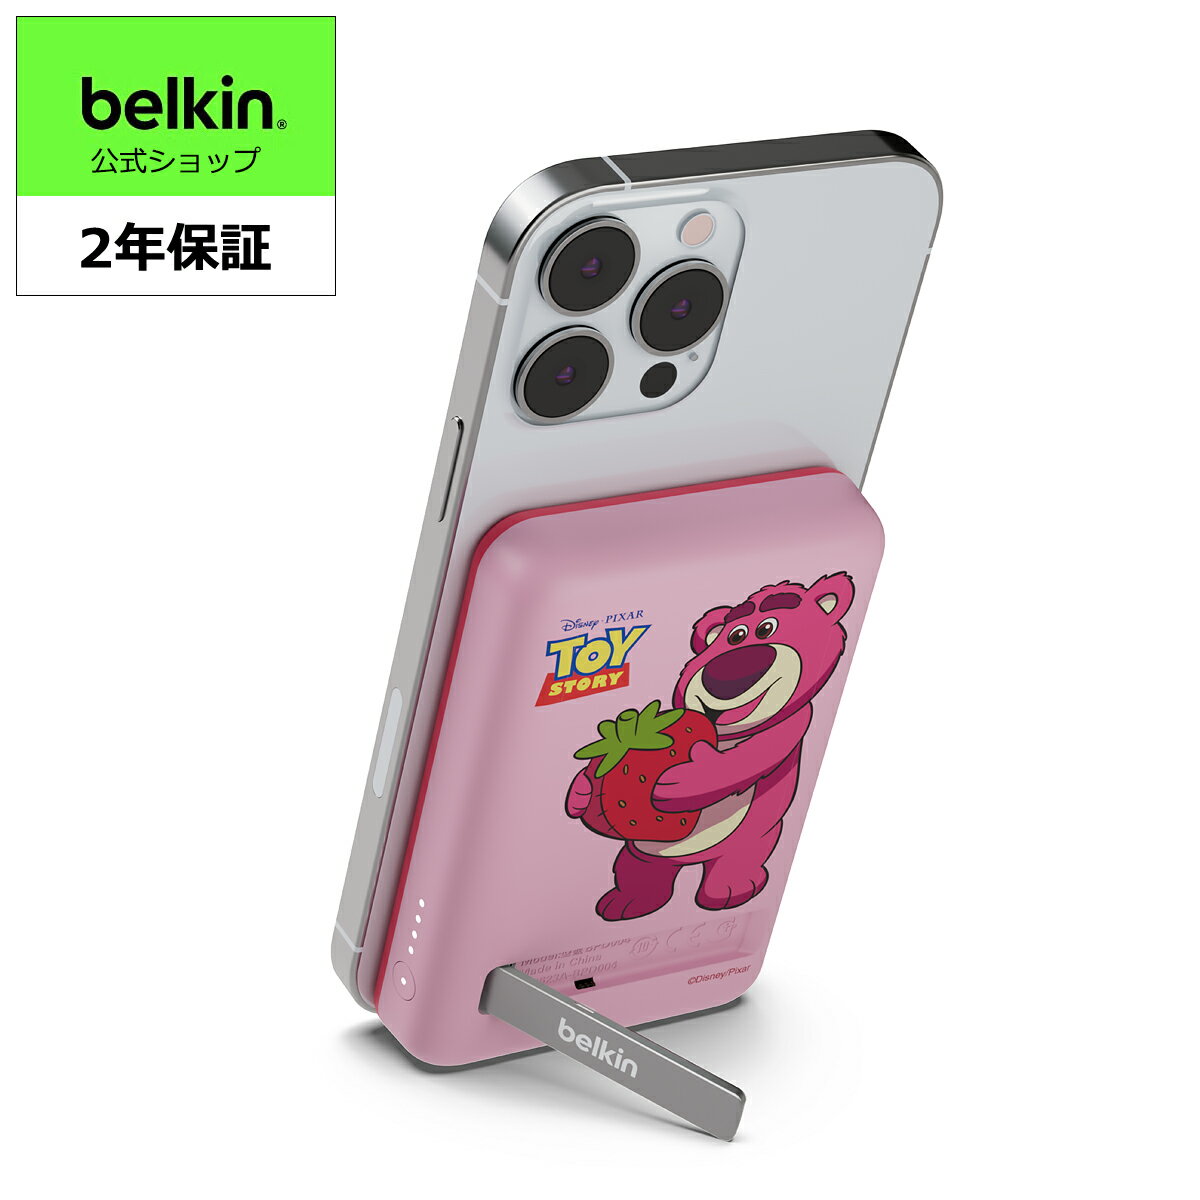 Belkin MagSafe対応 ワイヤレス モバイルバッテリー 5000mAh(7.5W) iPhone 12～15シリーズ対応 パススルー PSE 機内持込 ケーブル 保証2年 スタンド イチゴの香りのロッツォシール付属 ピンク BPD004qcPU-DY